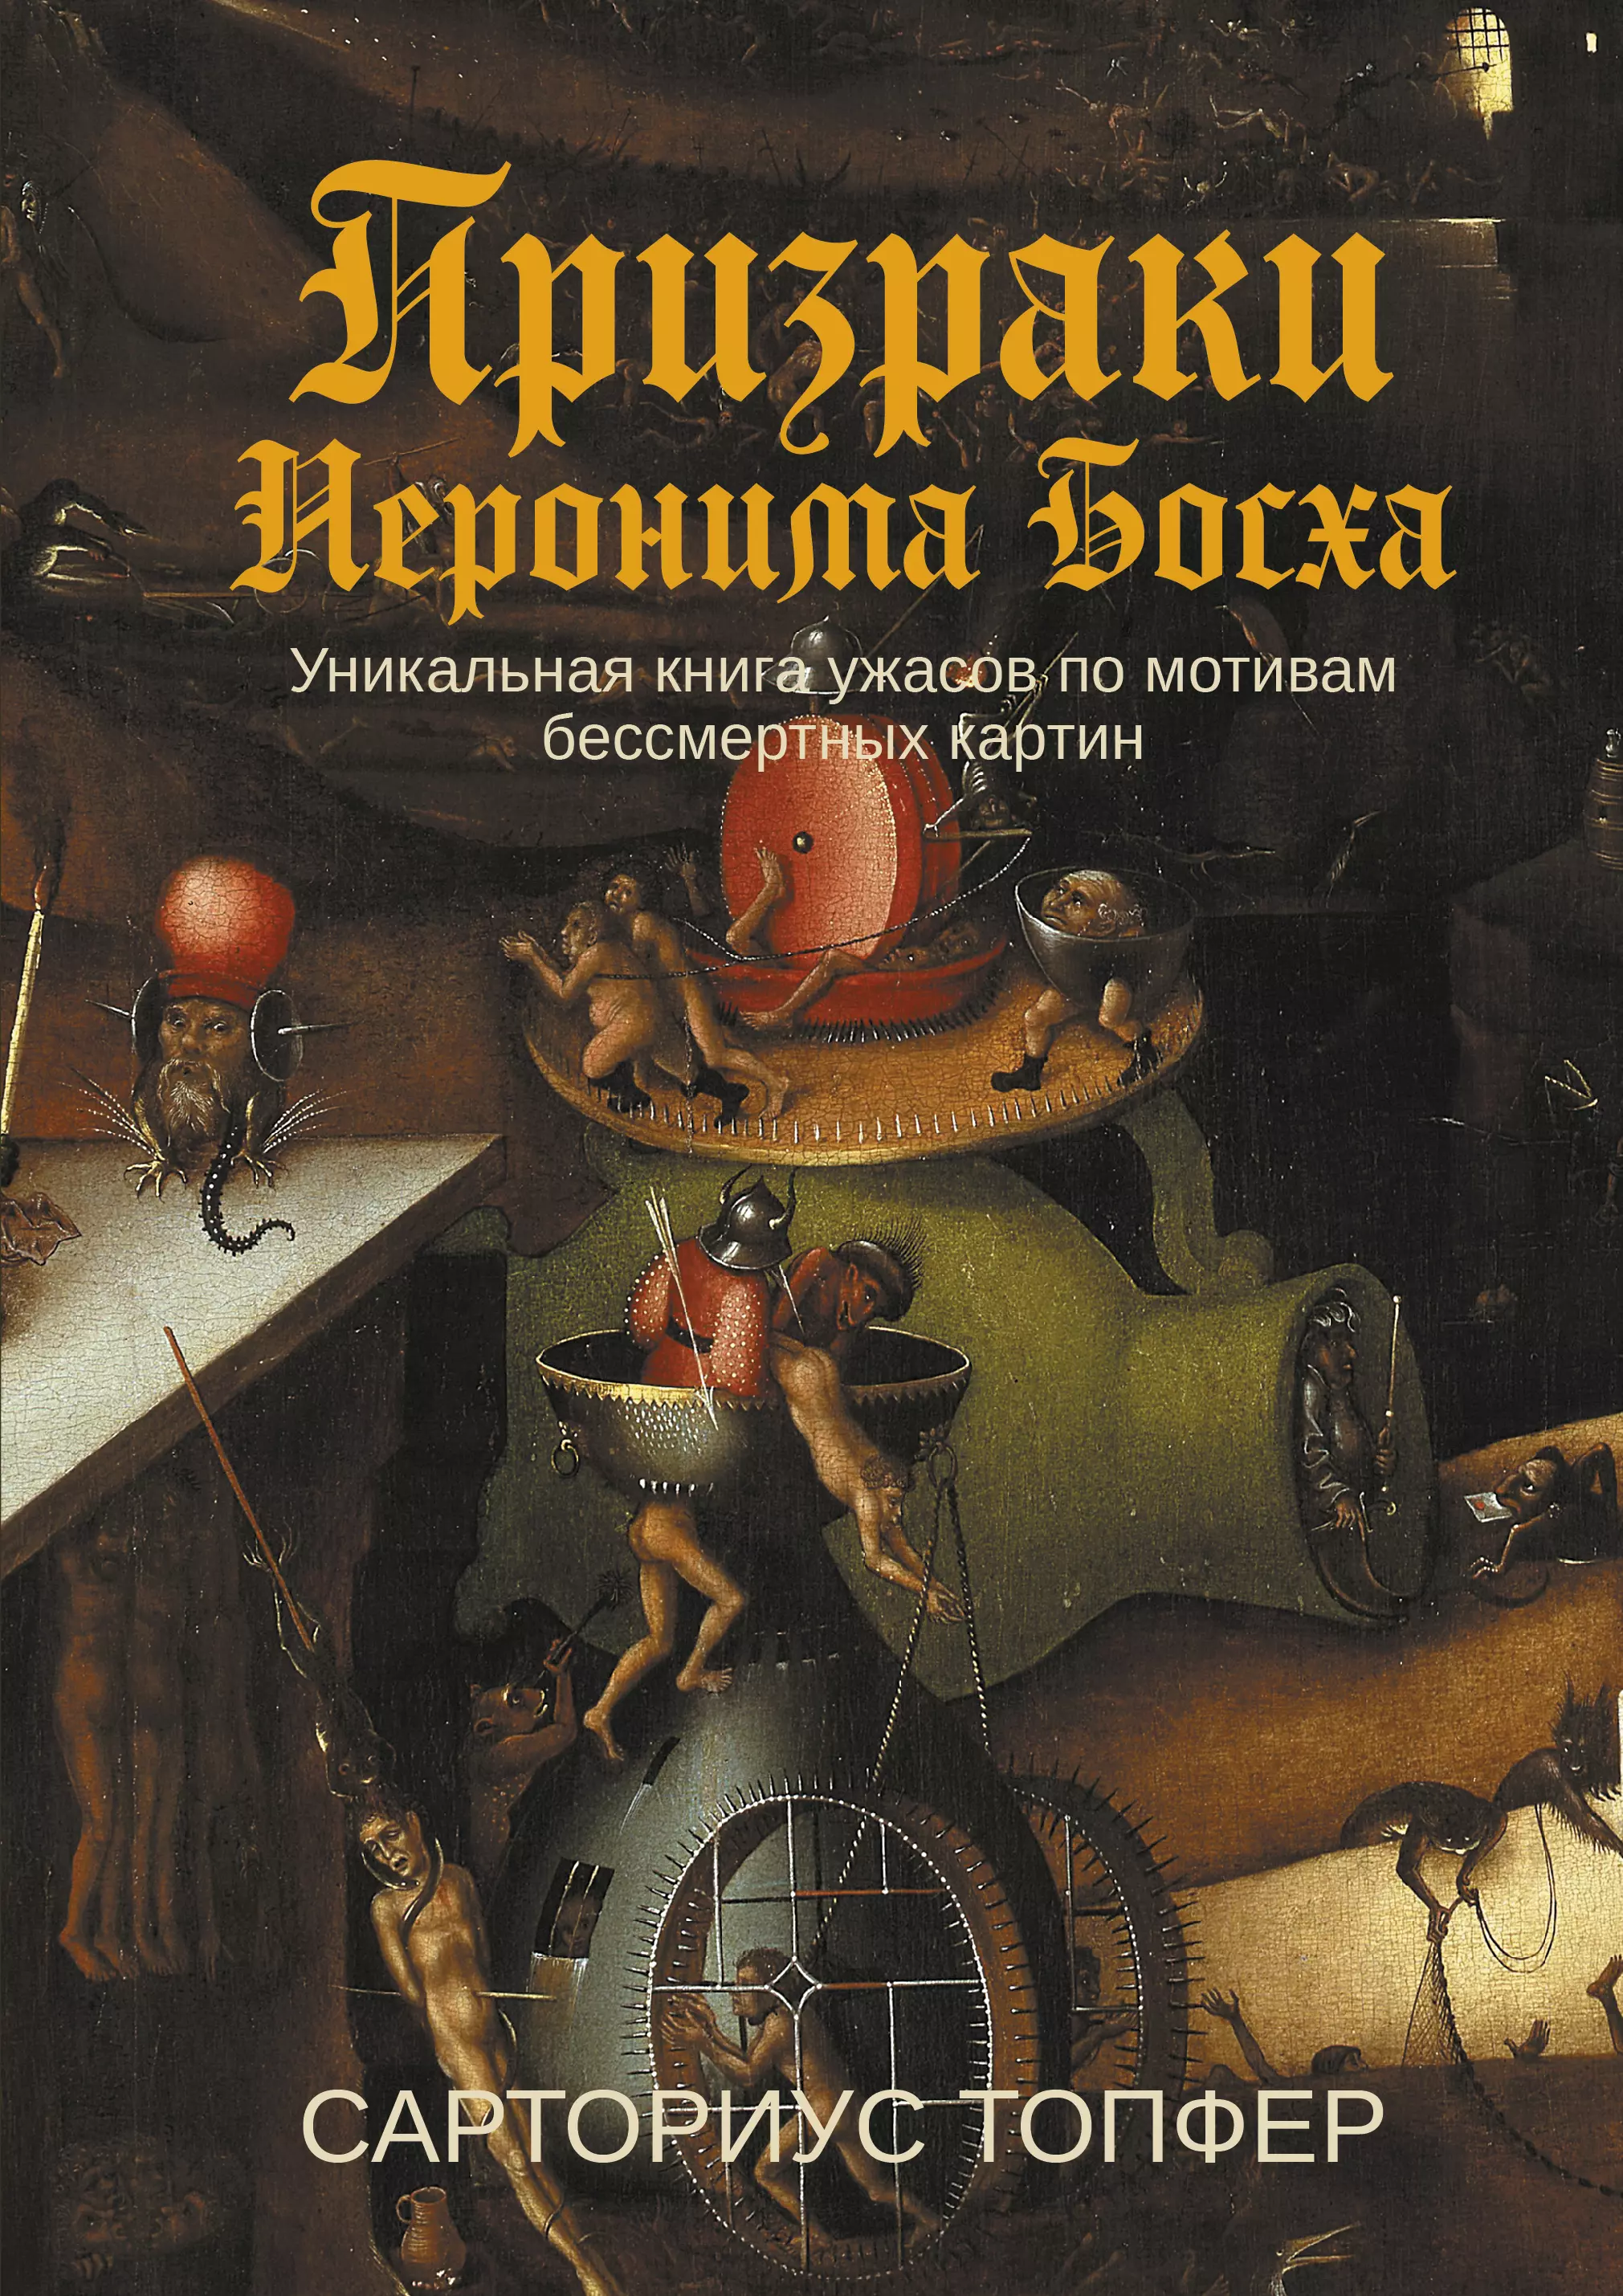 Топфер Сарториус - Призраки Иеронима Босха: уникальная книга ужасов по мотивам бессмертных картин